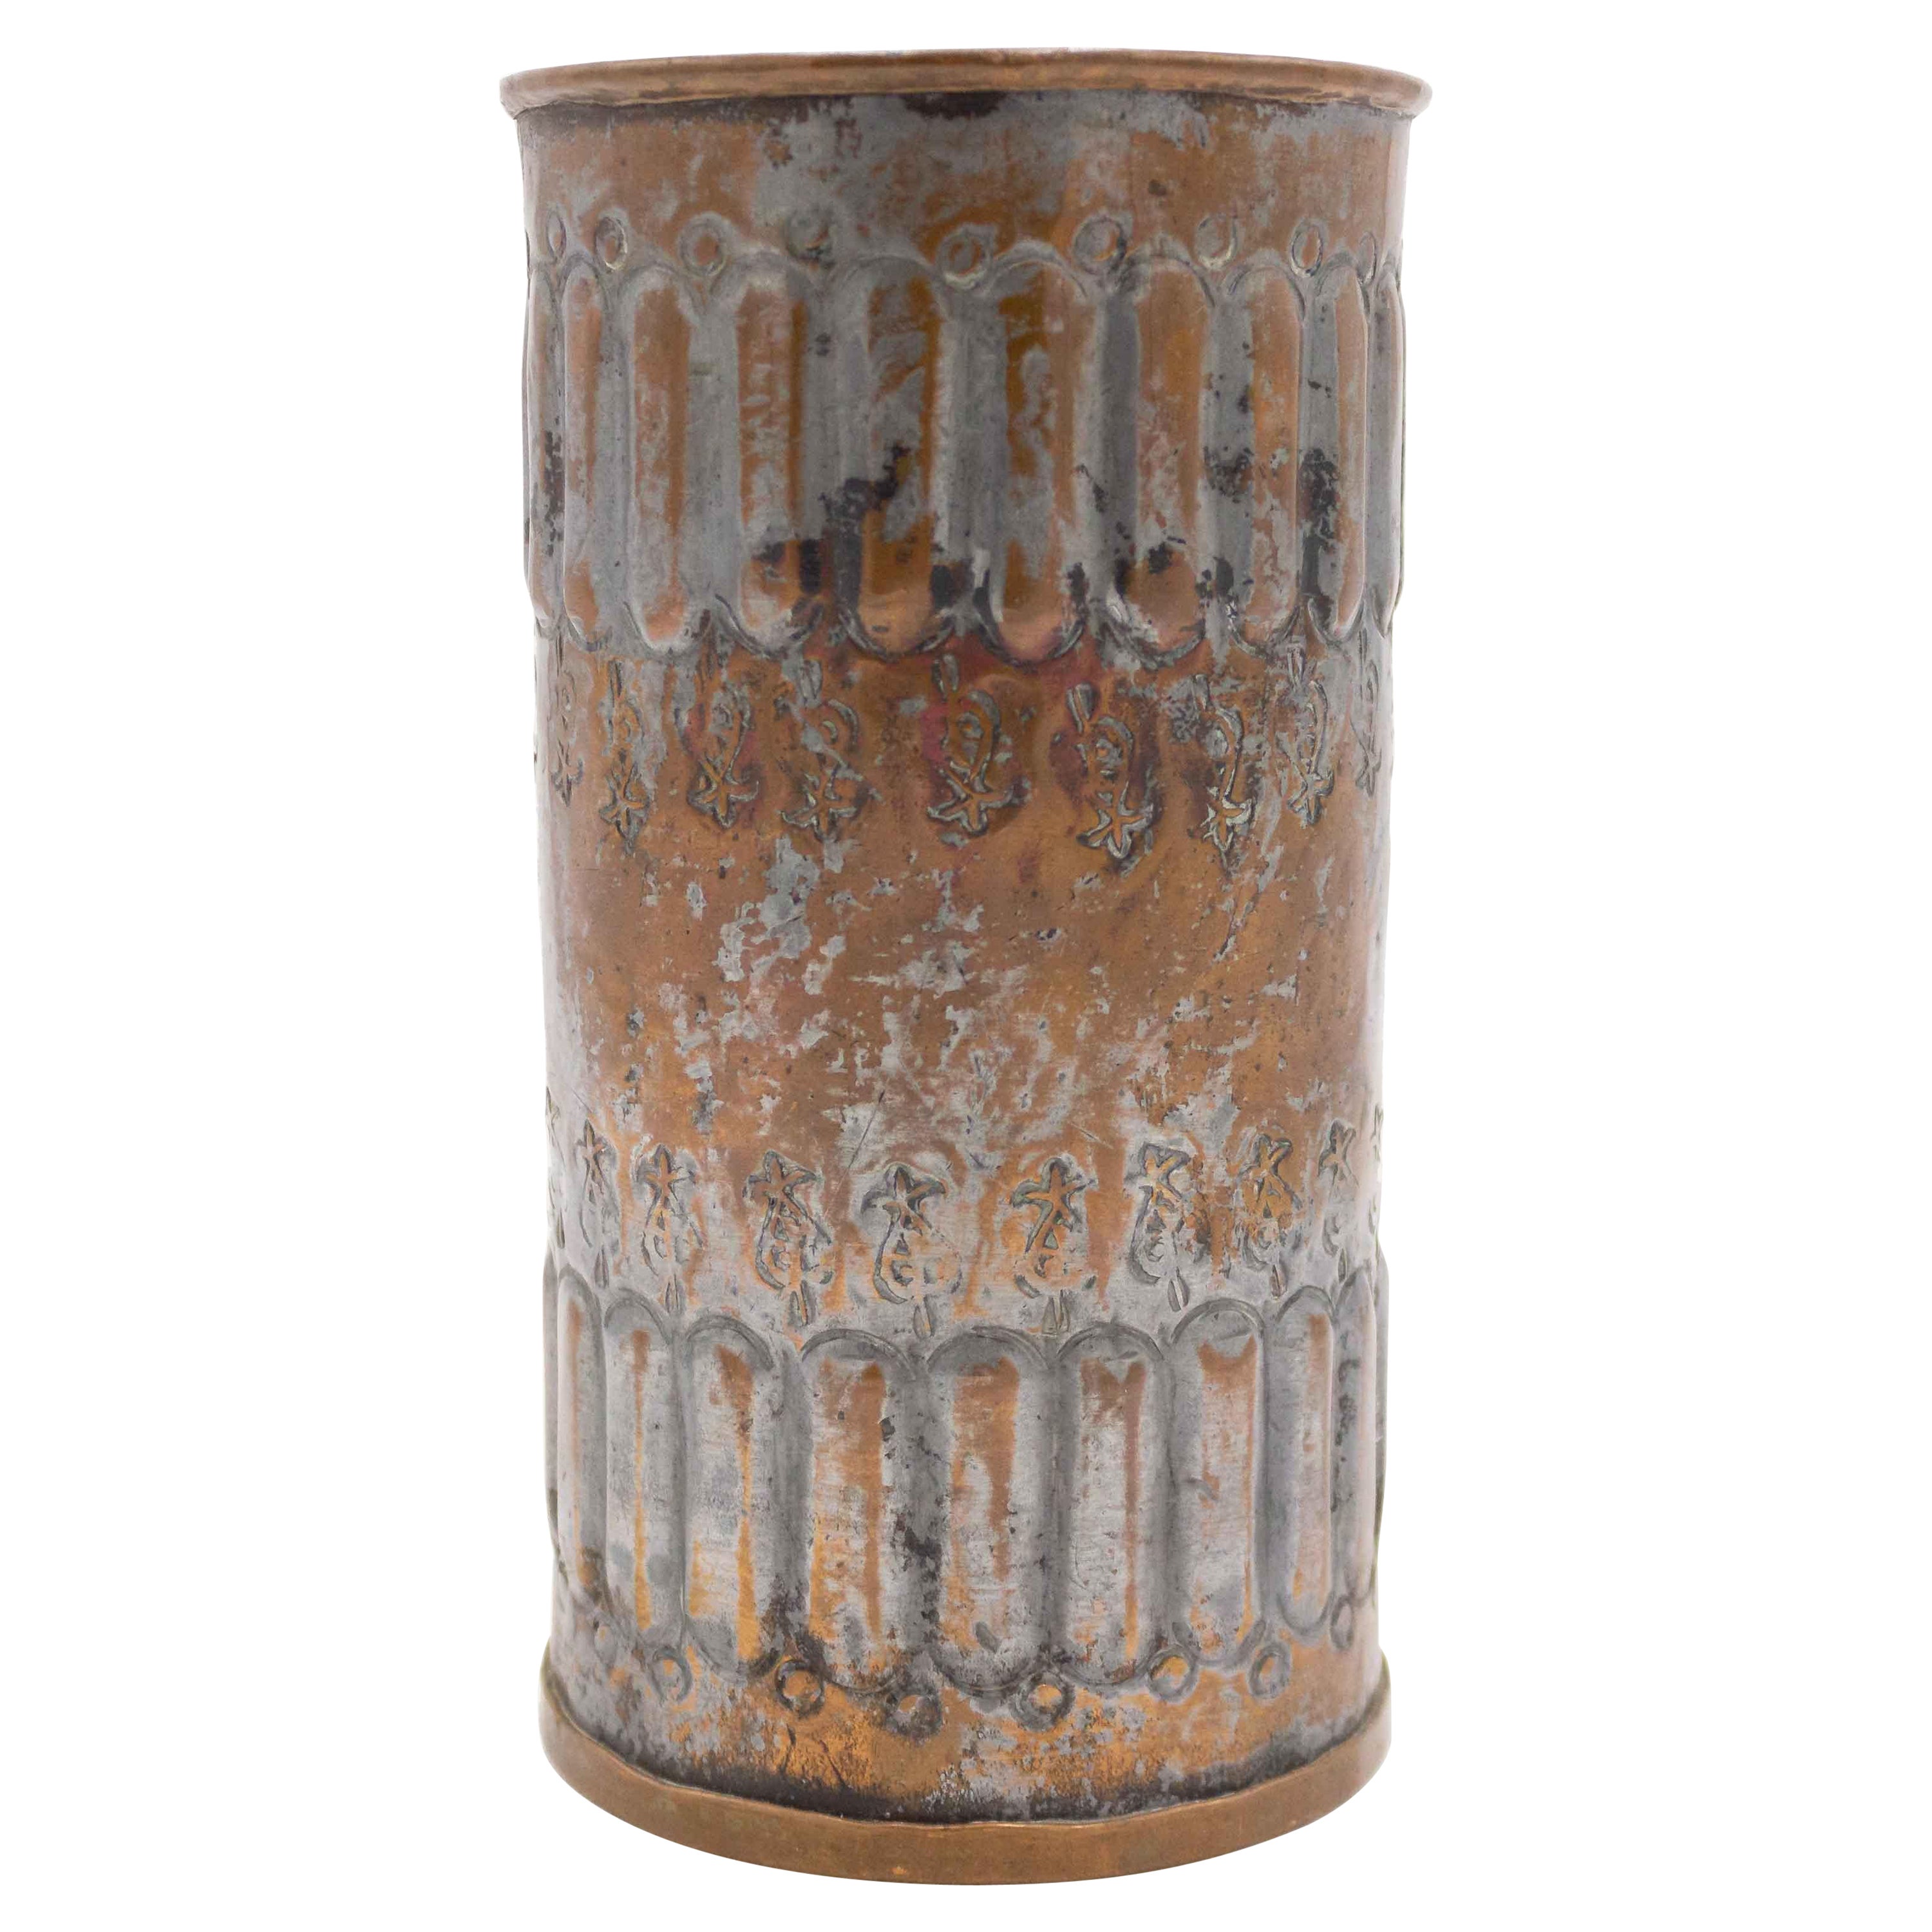 Englische Renaissance-Vase aus Kupfer, versilbert